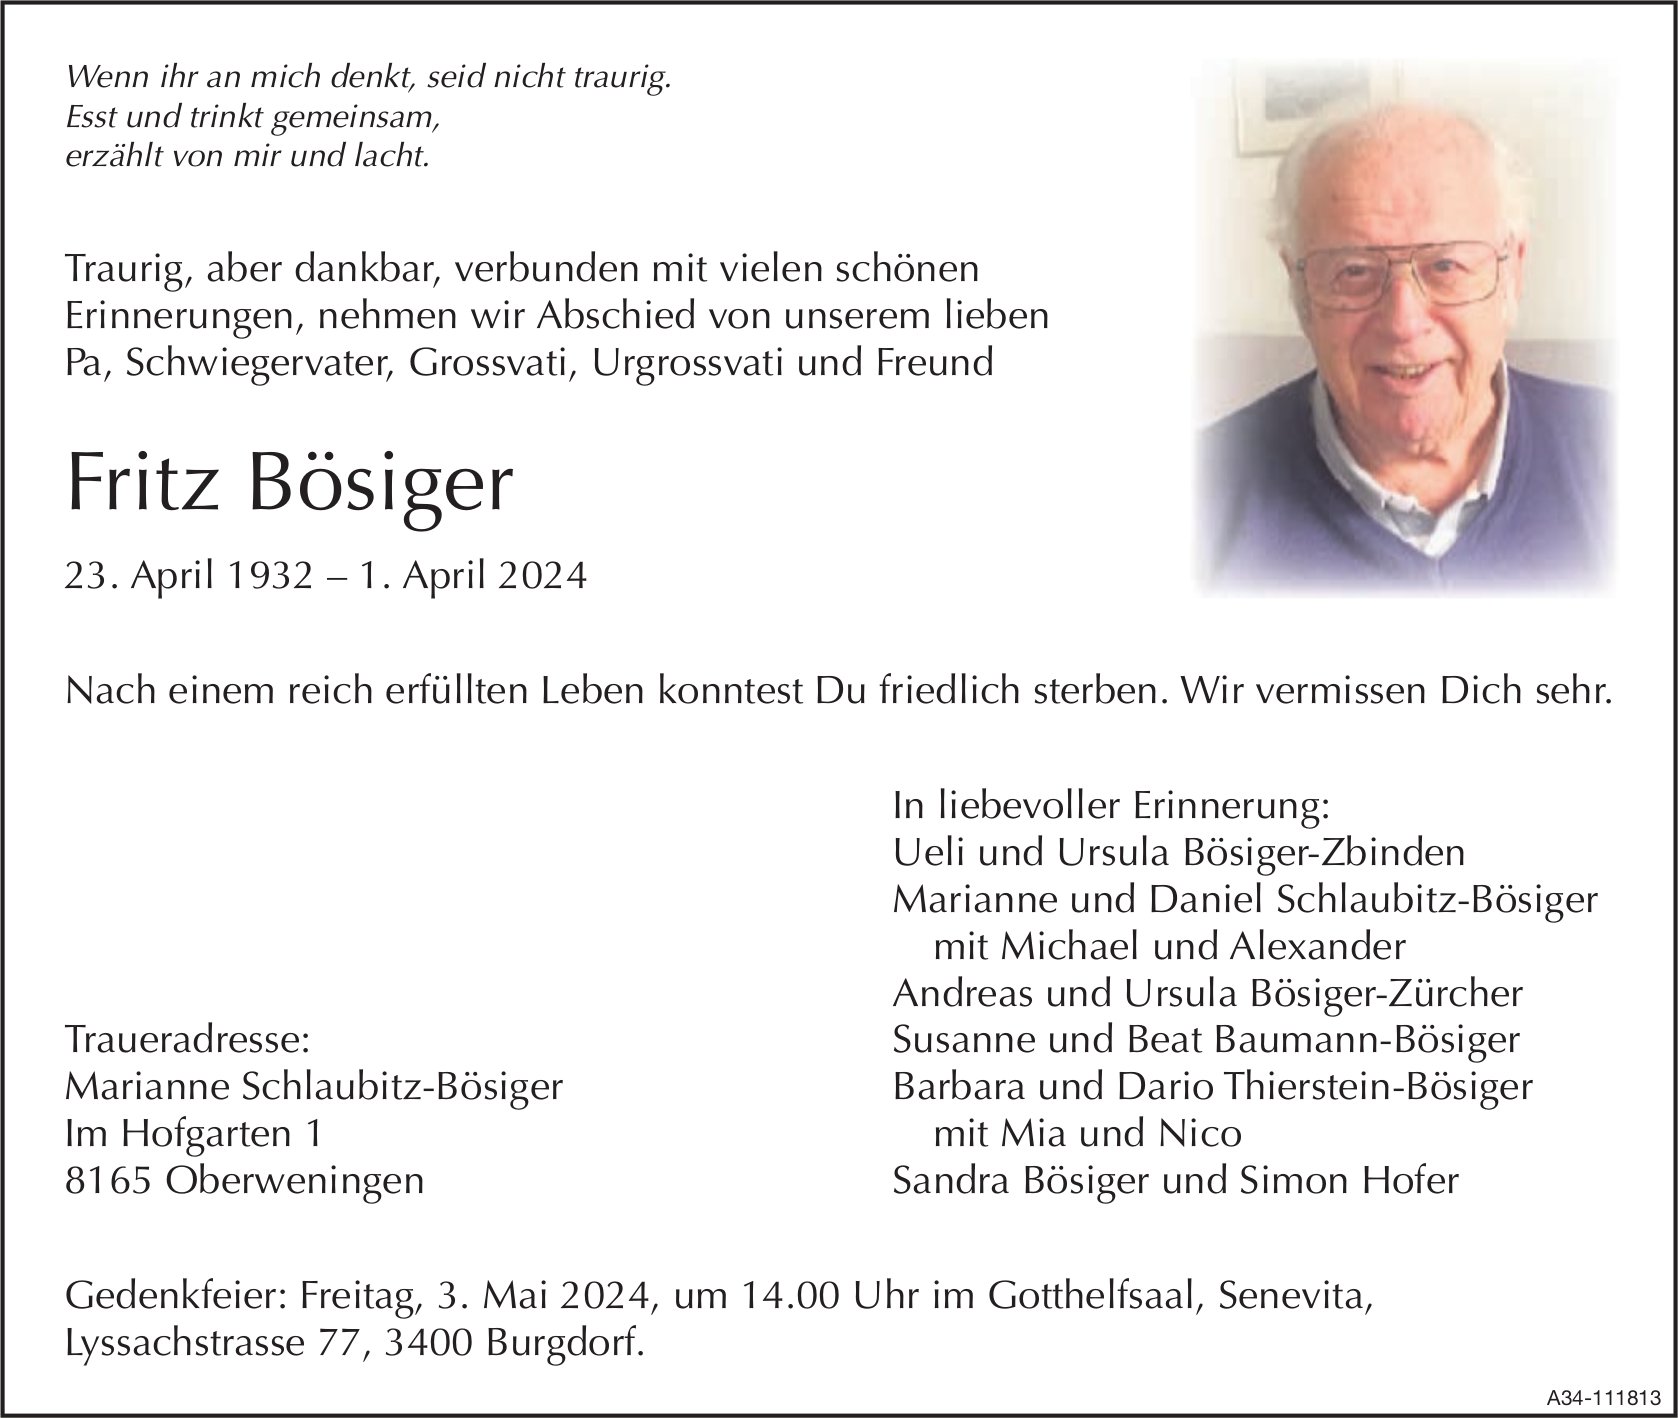 Fritz Bösiger, April 2024 / TA